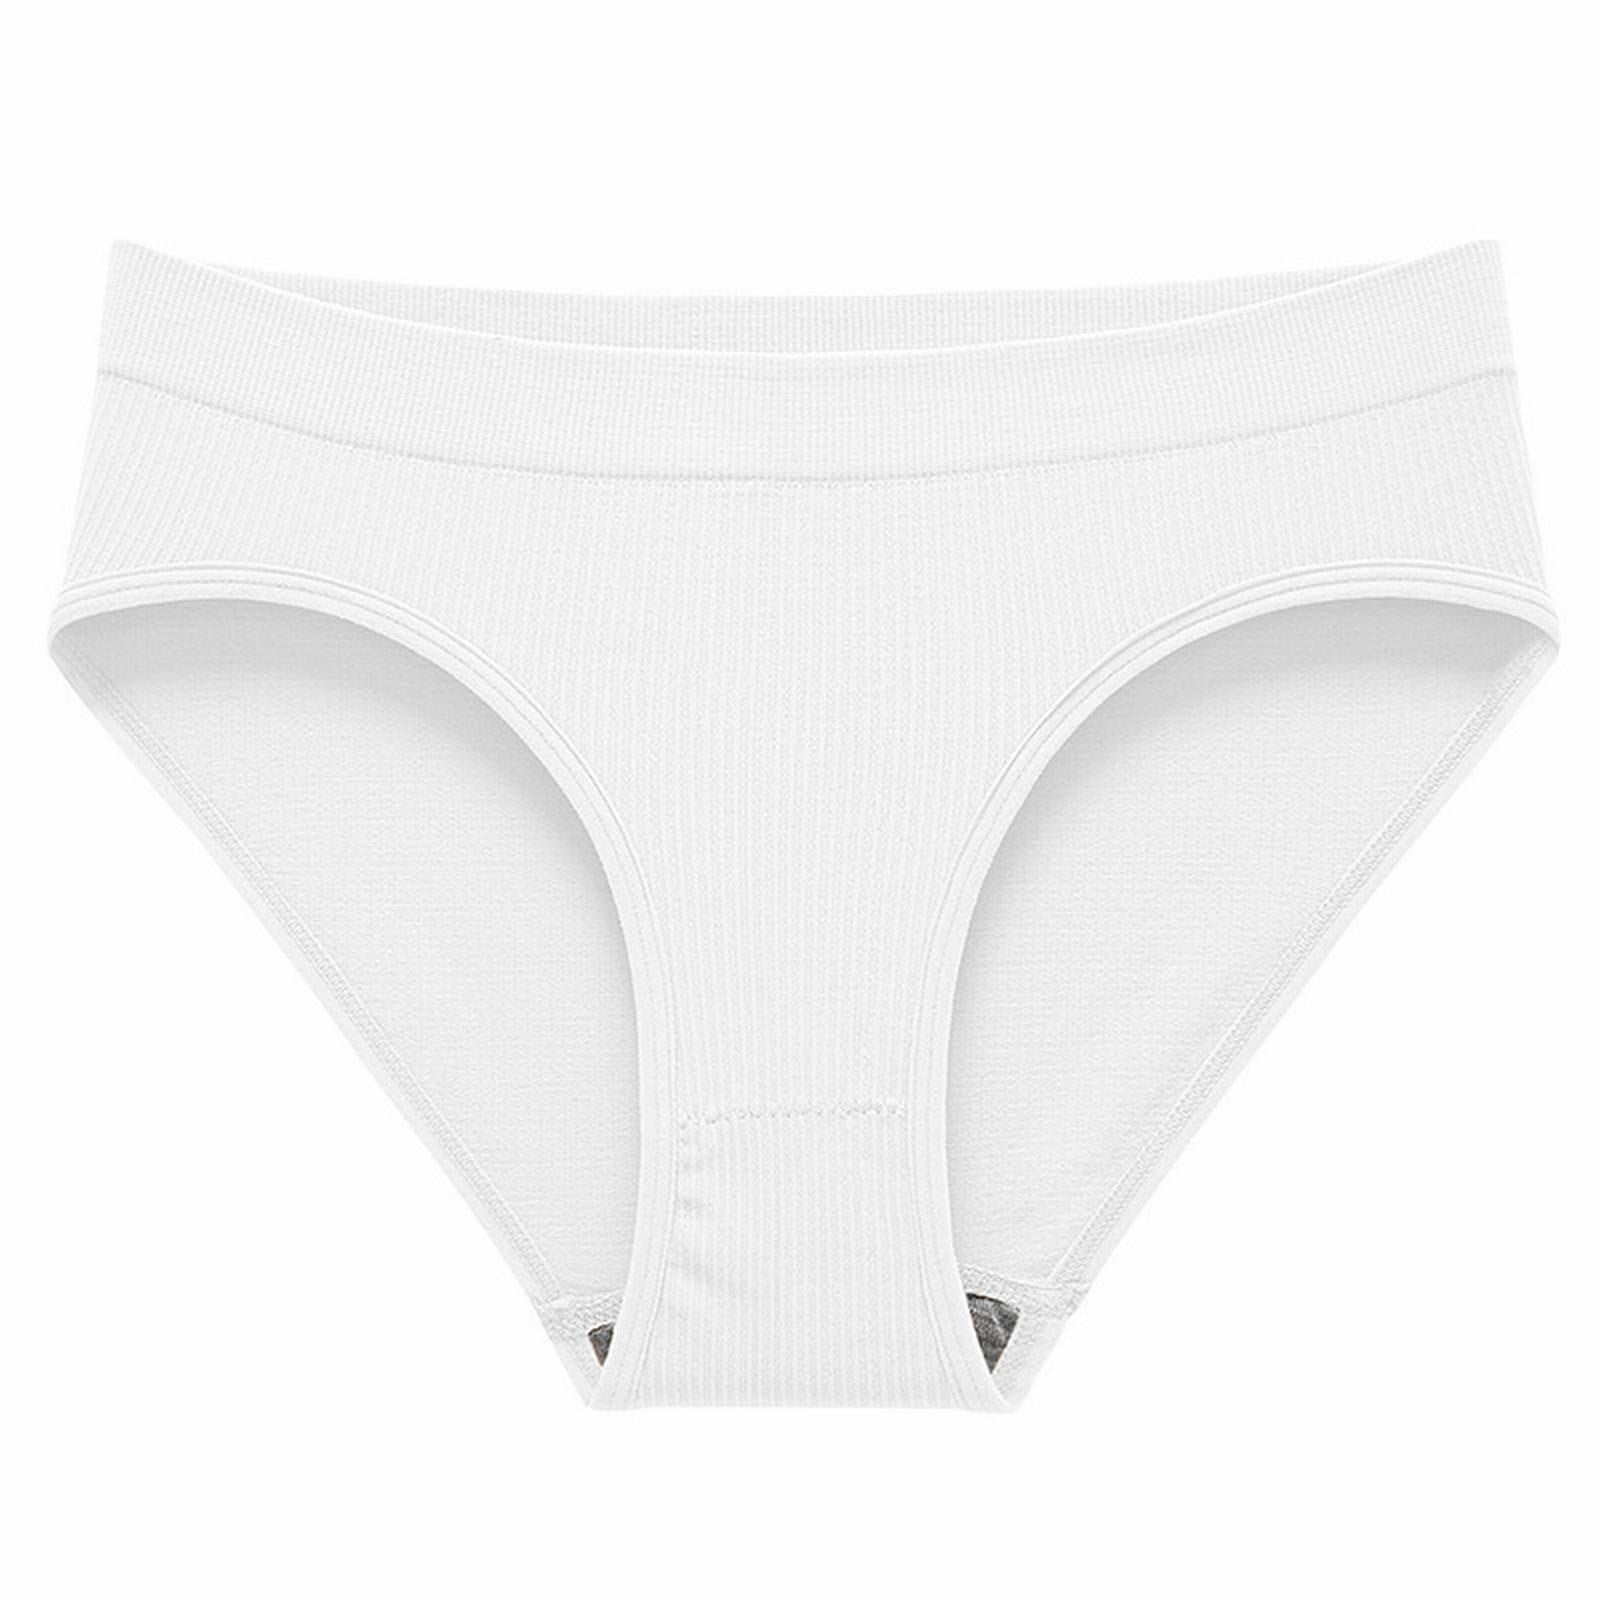 Fabiurt Women's Underwear Women's Panties Cotton Panties Women's Briefs ...